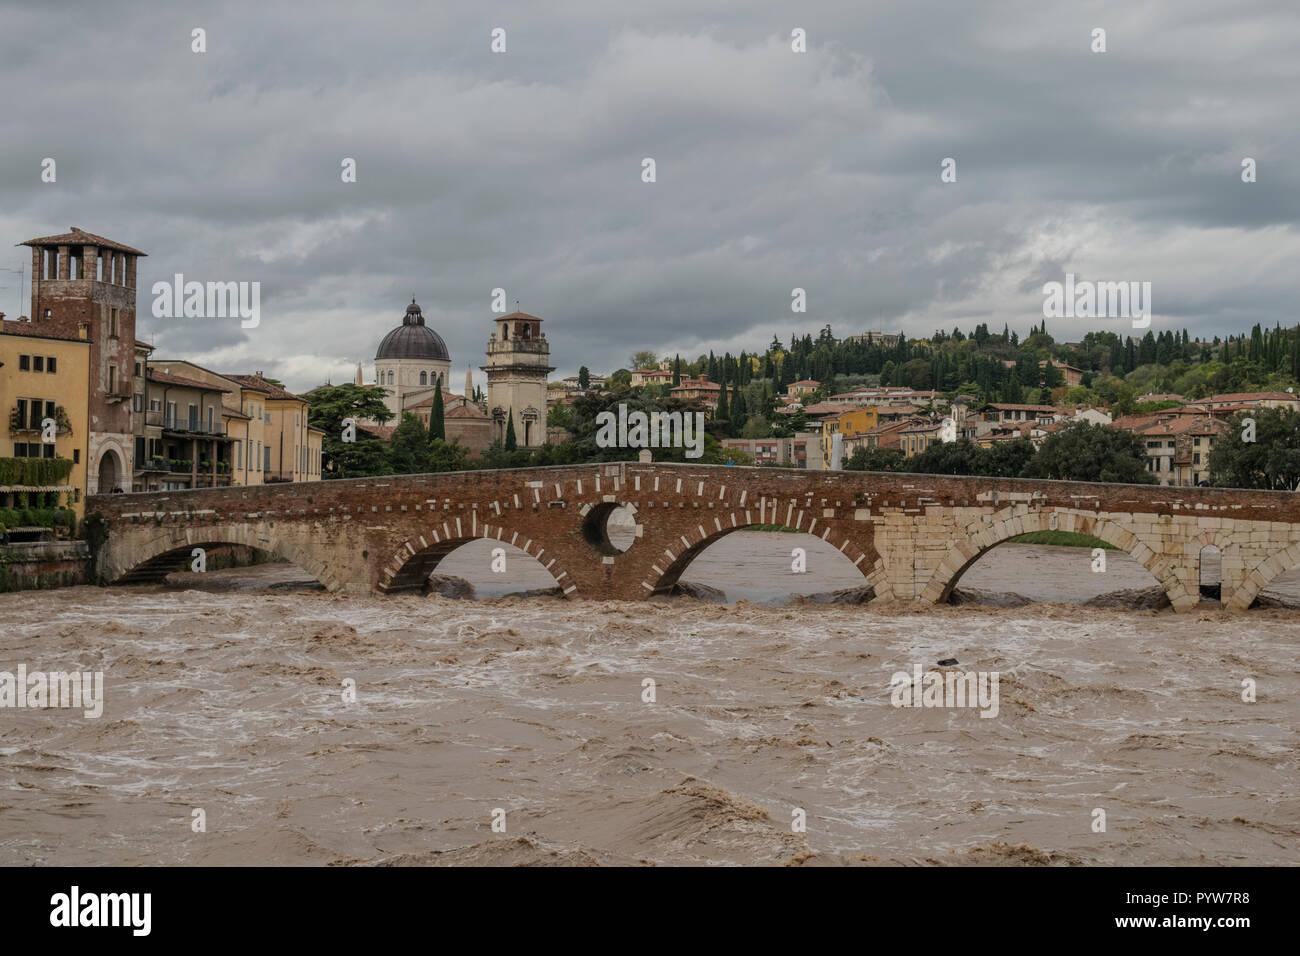 Vérone, Italie - 30 octobre 2018 : Danger d'inondation après que la pluie a rempli la rivière Adige Crédit : Anca Emanuela Bistrita/Alamy Live News Banque D'Images